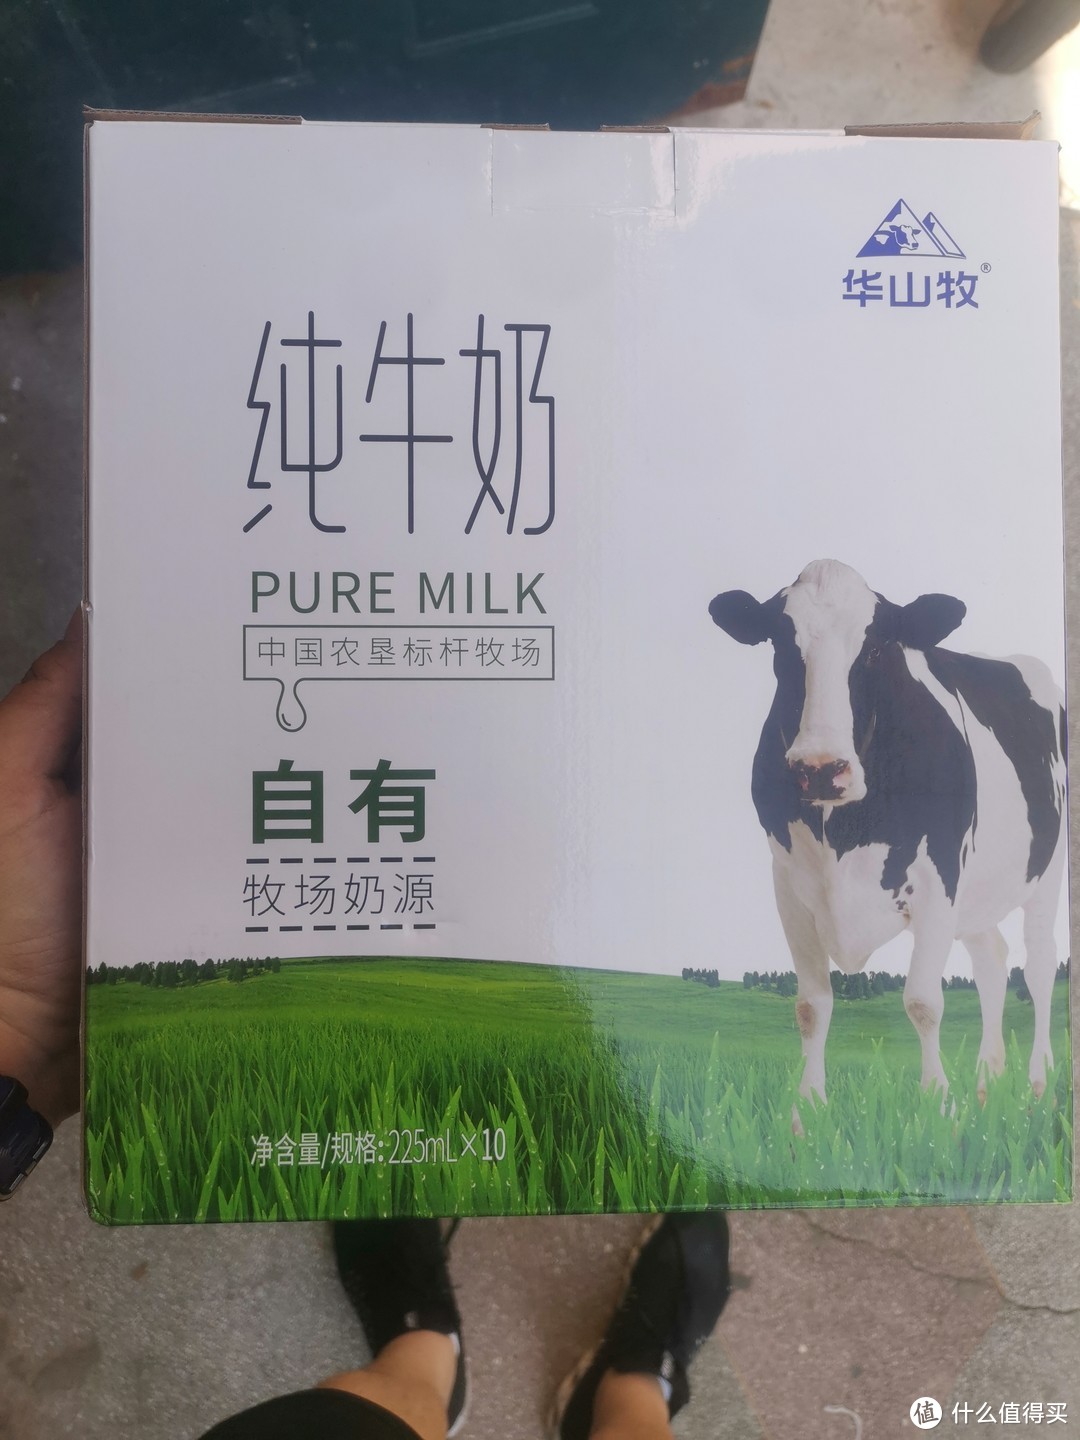 感谢张大妈让我品尝到经济实惠的好牛奶